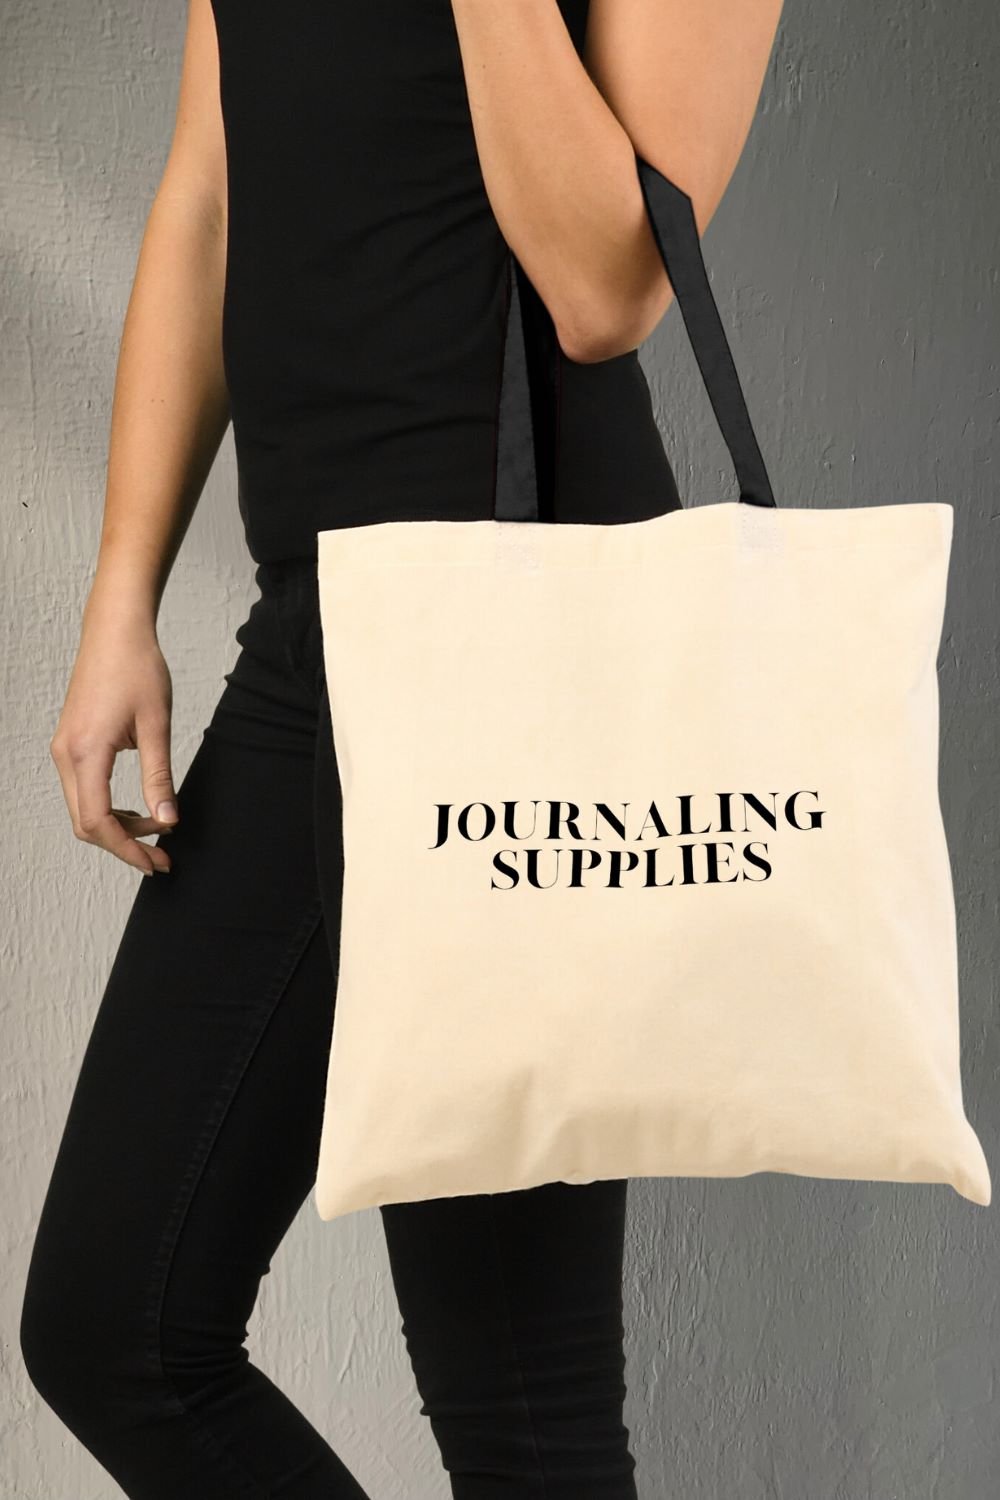 Journaling Supplies Tote Bag